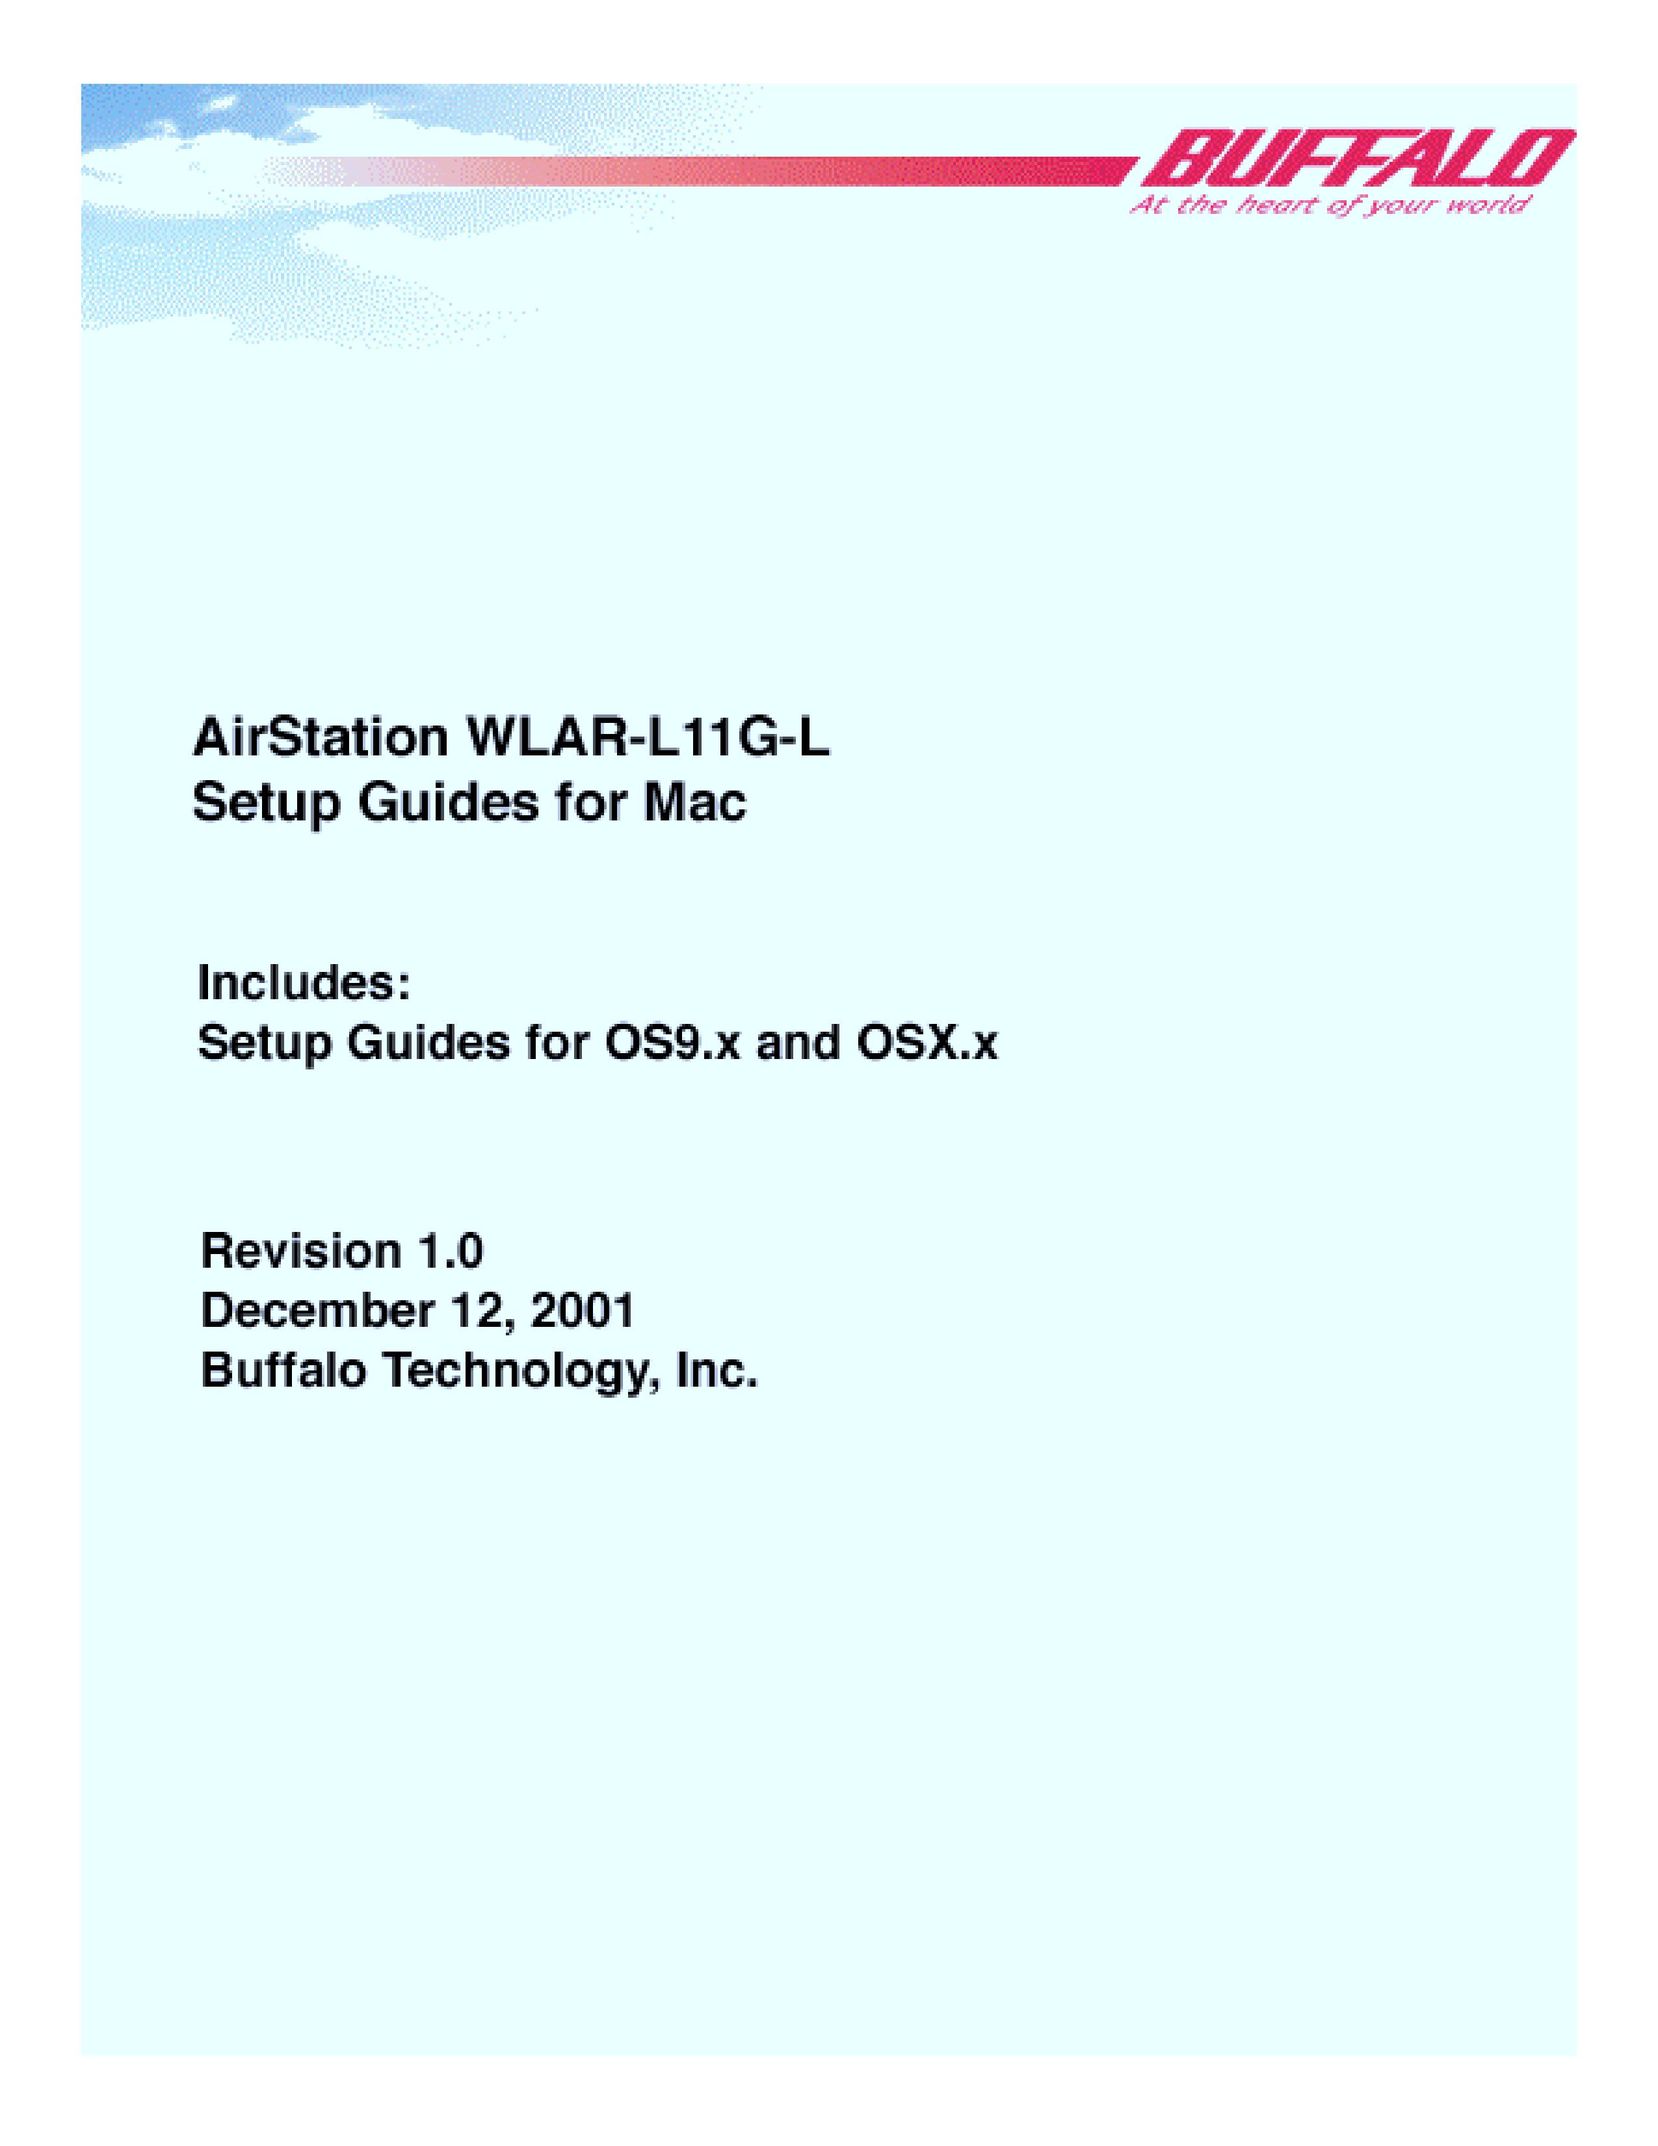 Buffalo Technology WLAR-L11G-L Network Card User Manual